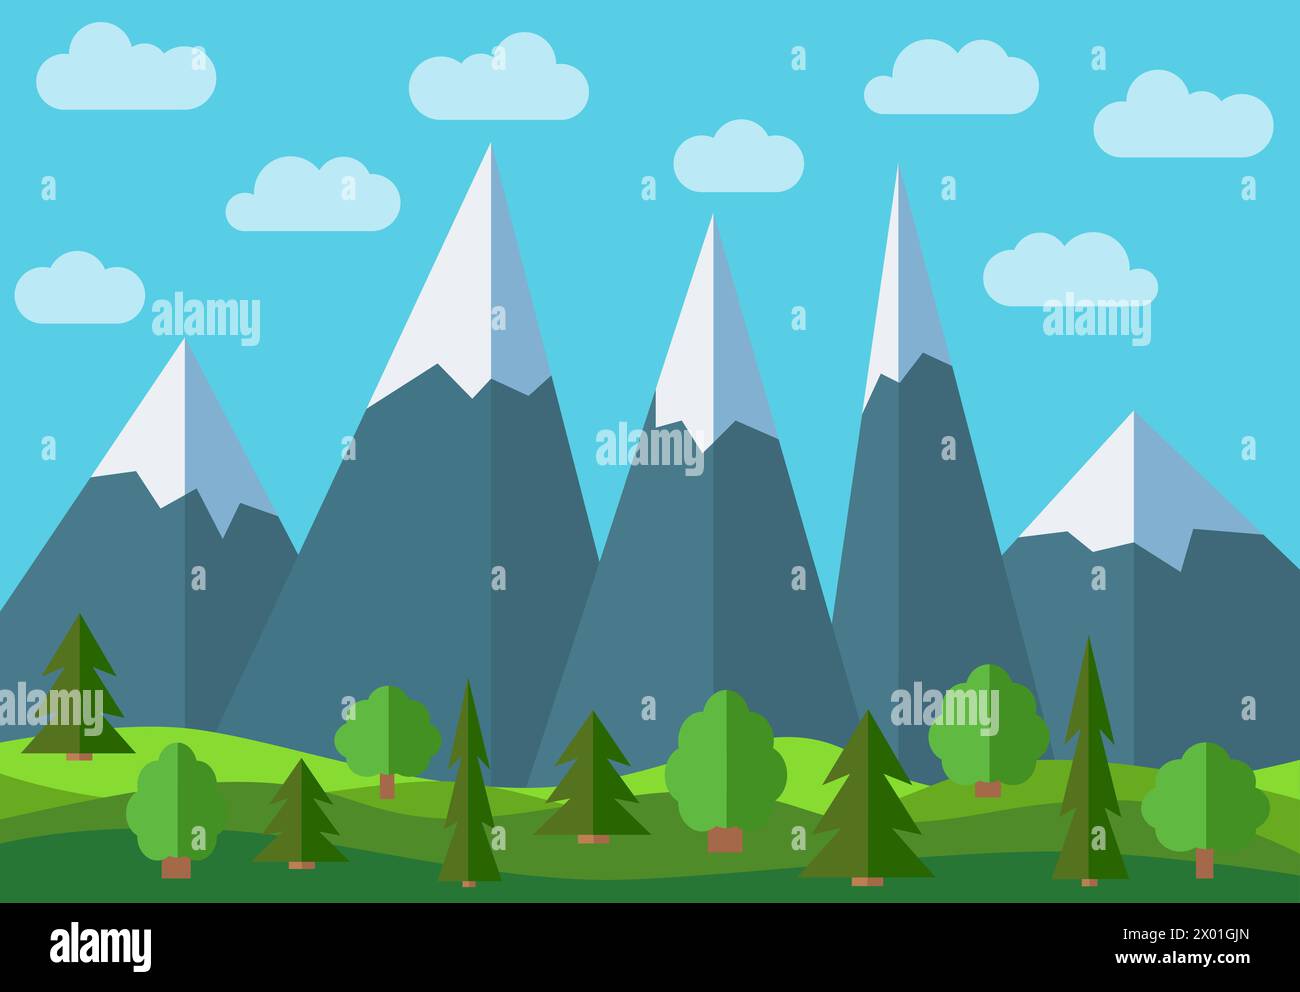 Vektor Panorama Berg Cartoon Landschaft. Natürliche Landschaft im flachen Stil mit blauem Himmel, Wolken, Bäumen, Hügeln und Bergen mit Schnee auf dem pe Stock Vektor